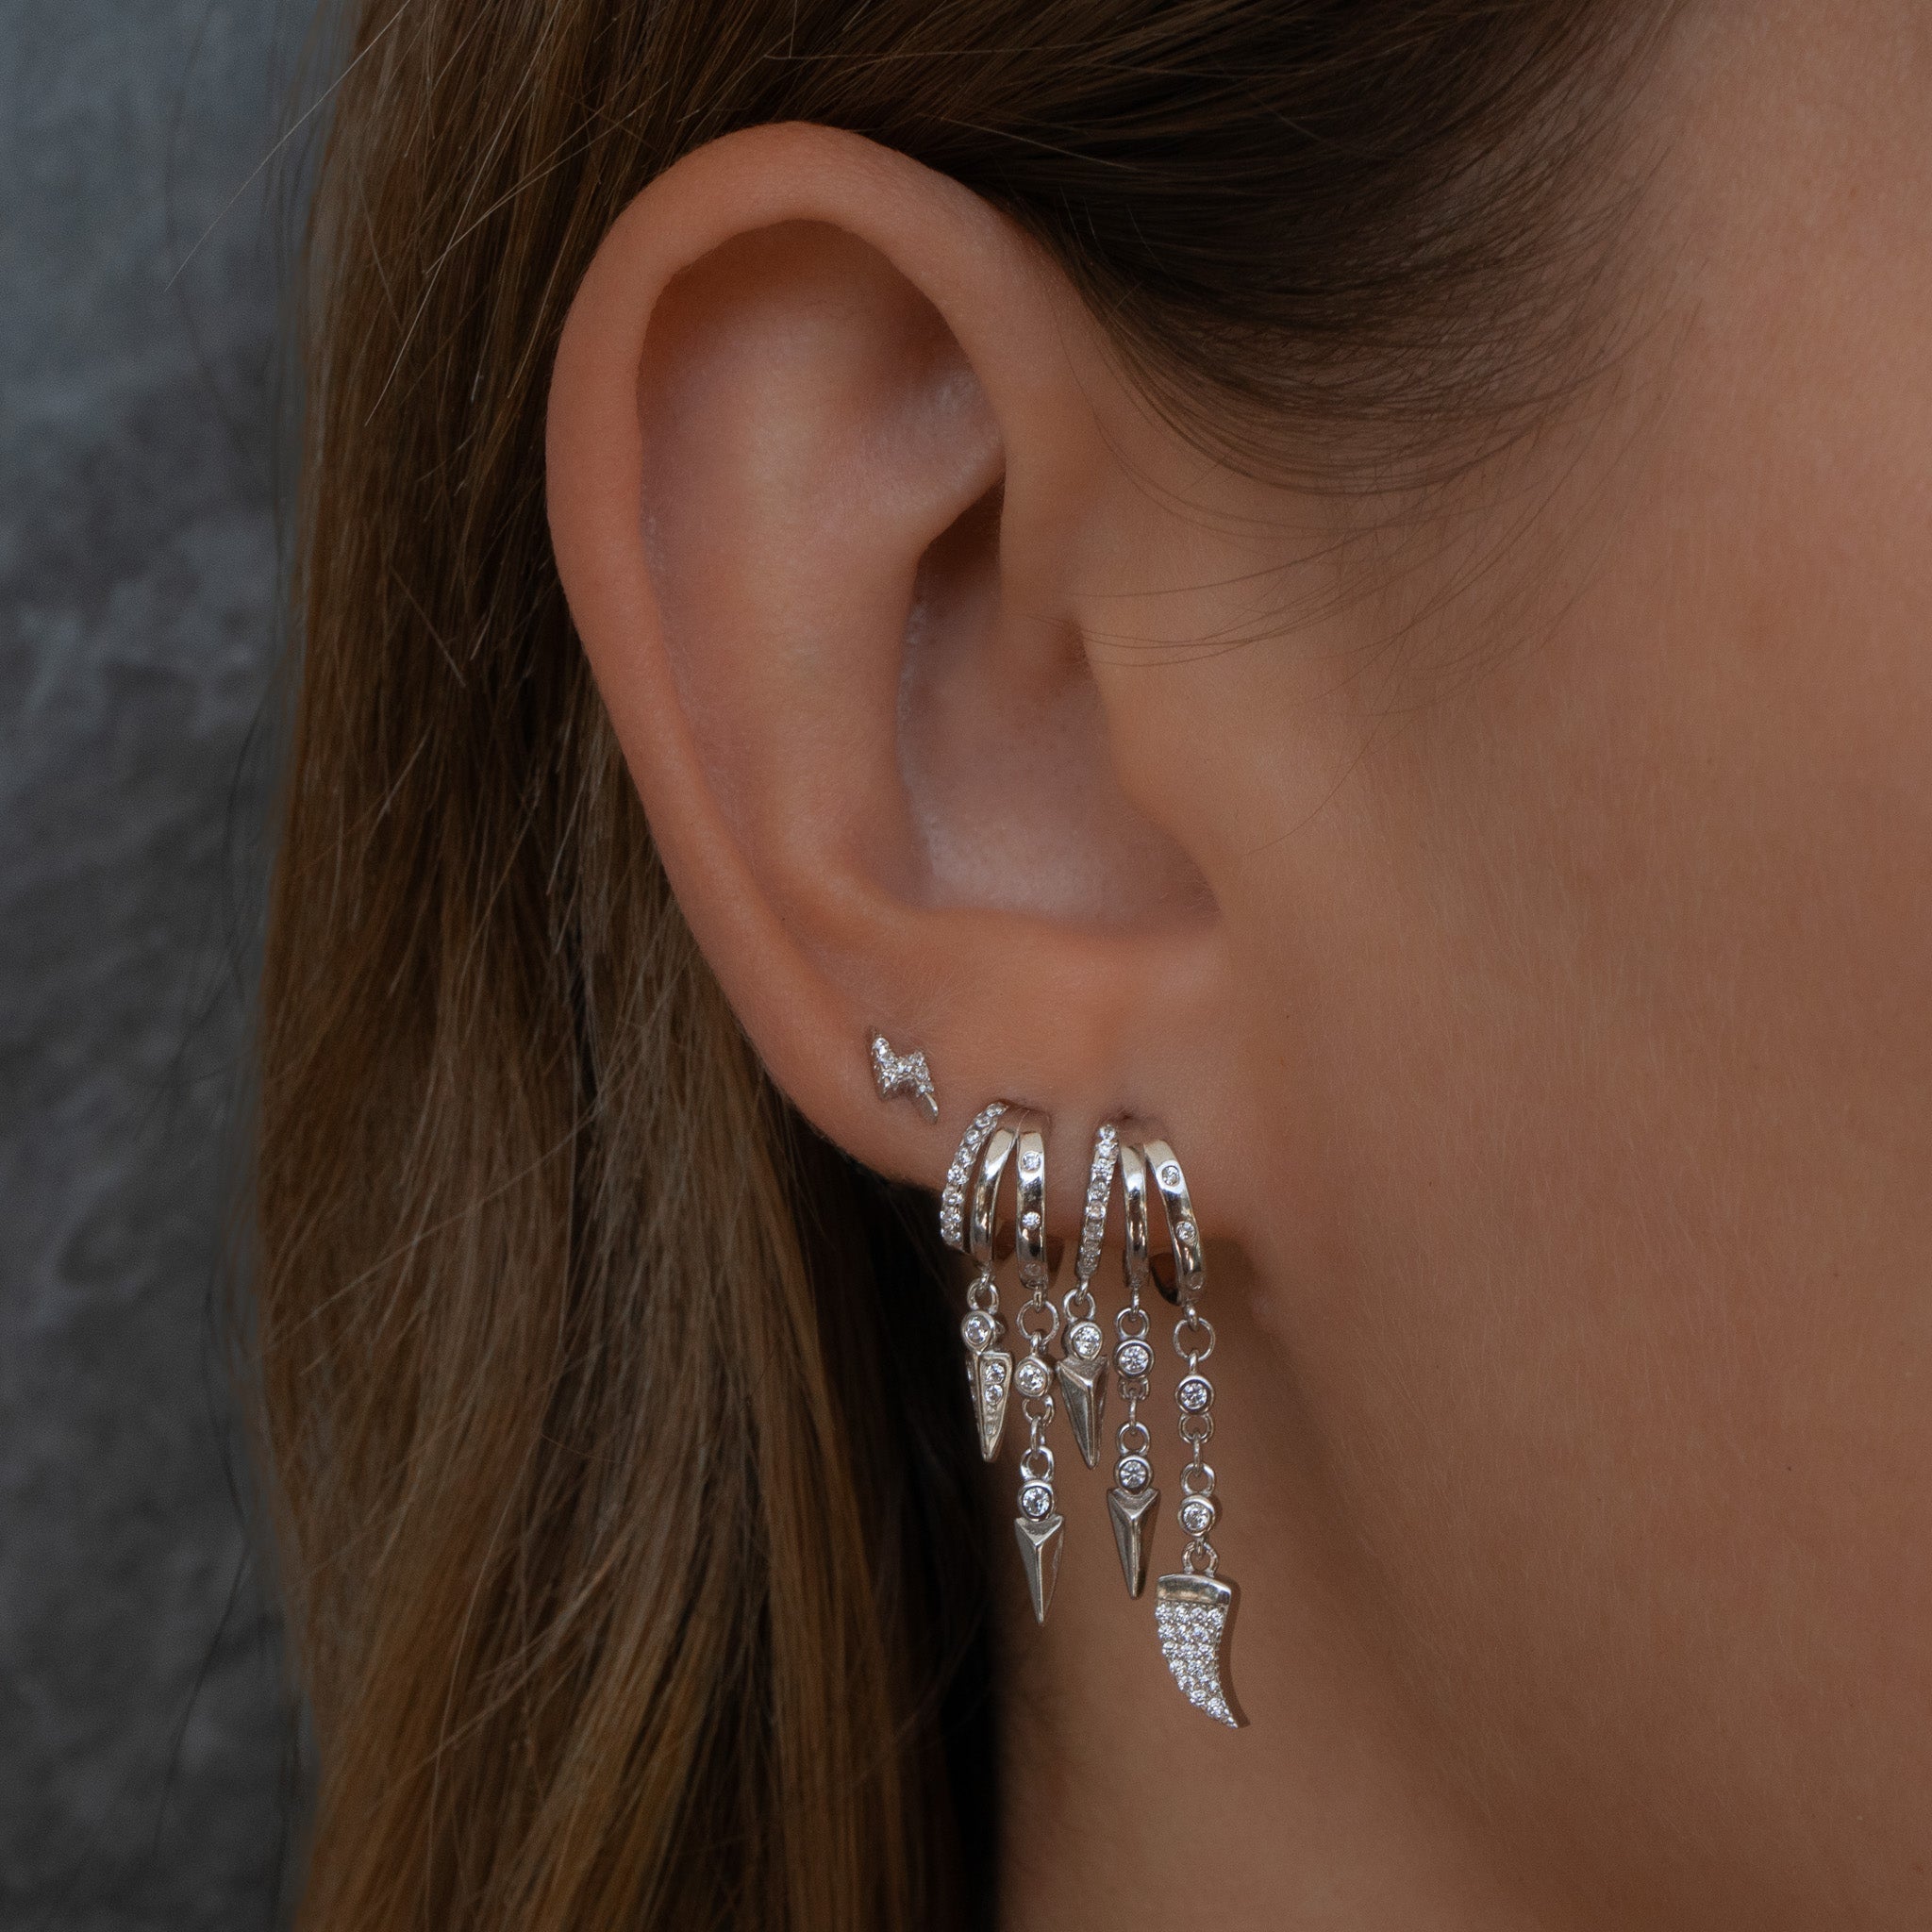 Cairo Earrings - Silver